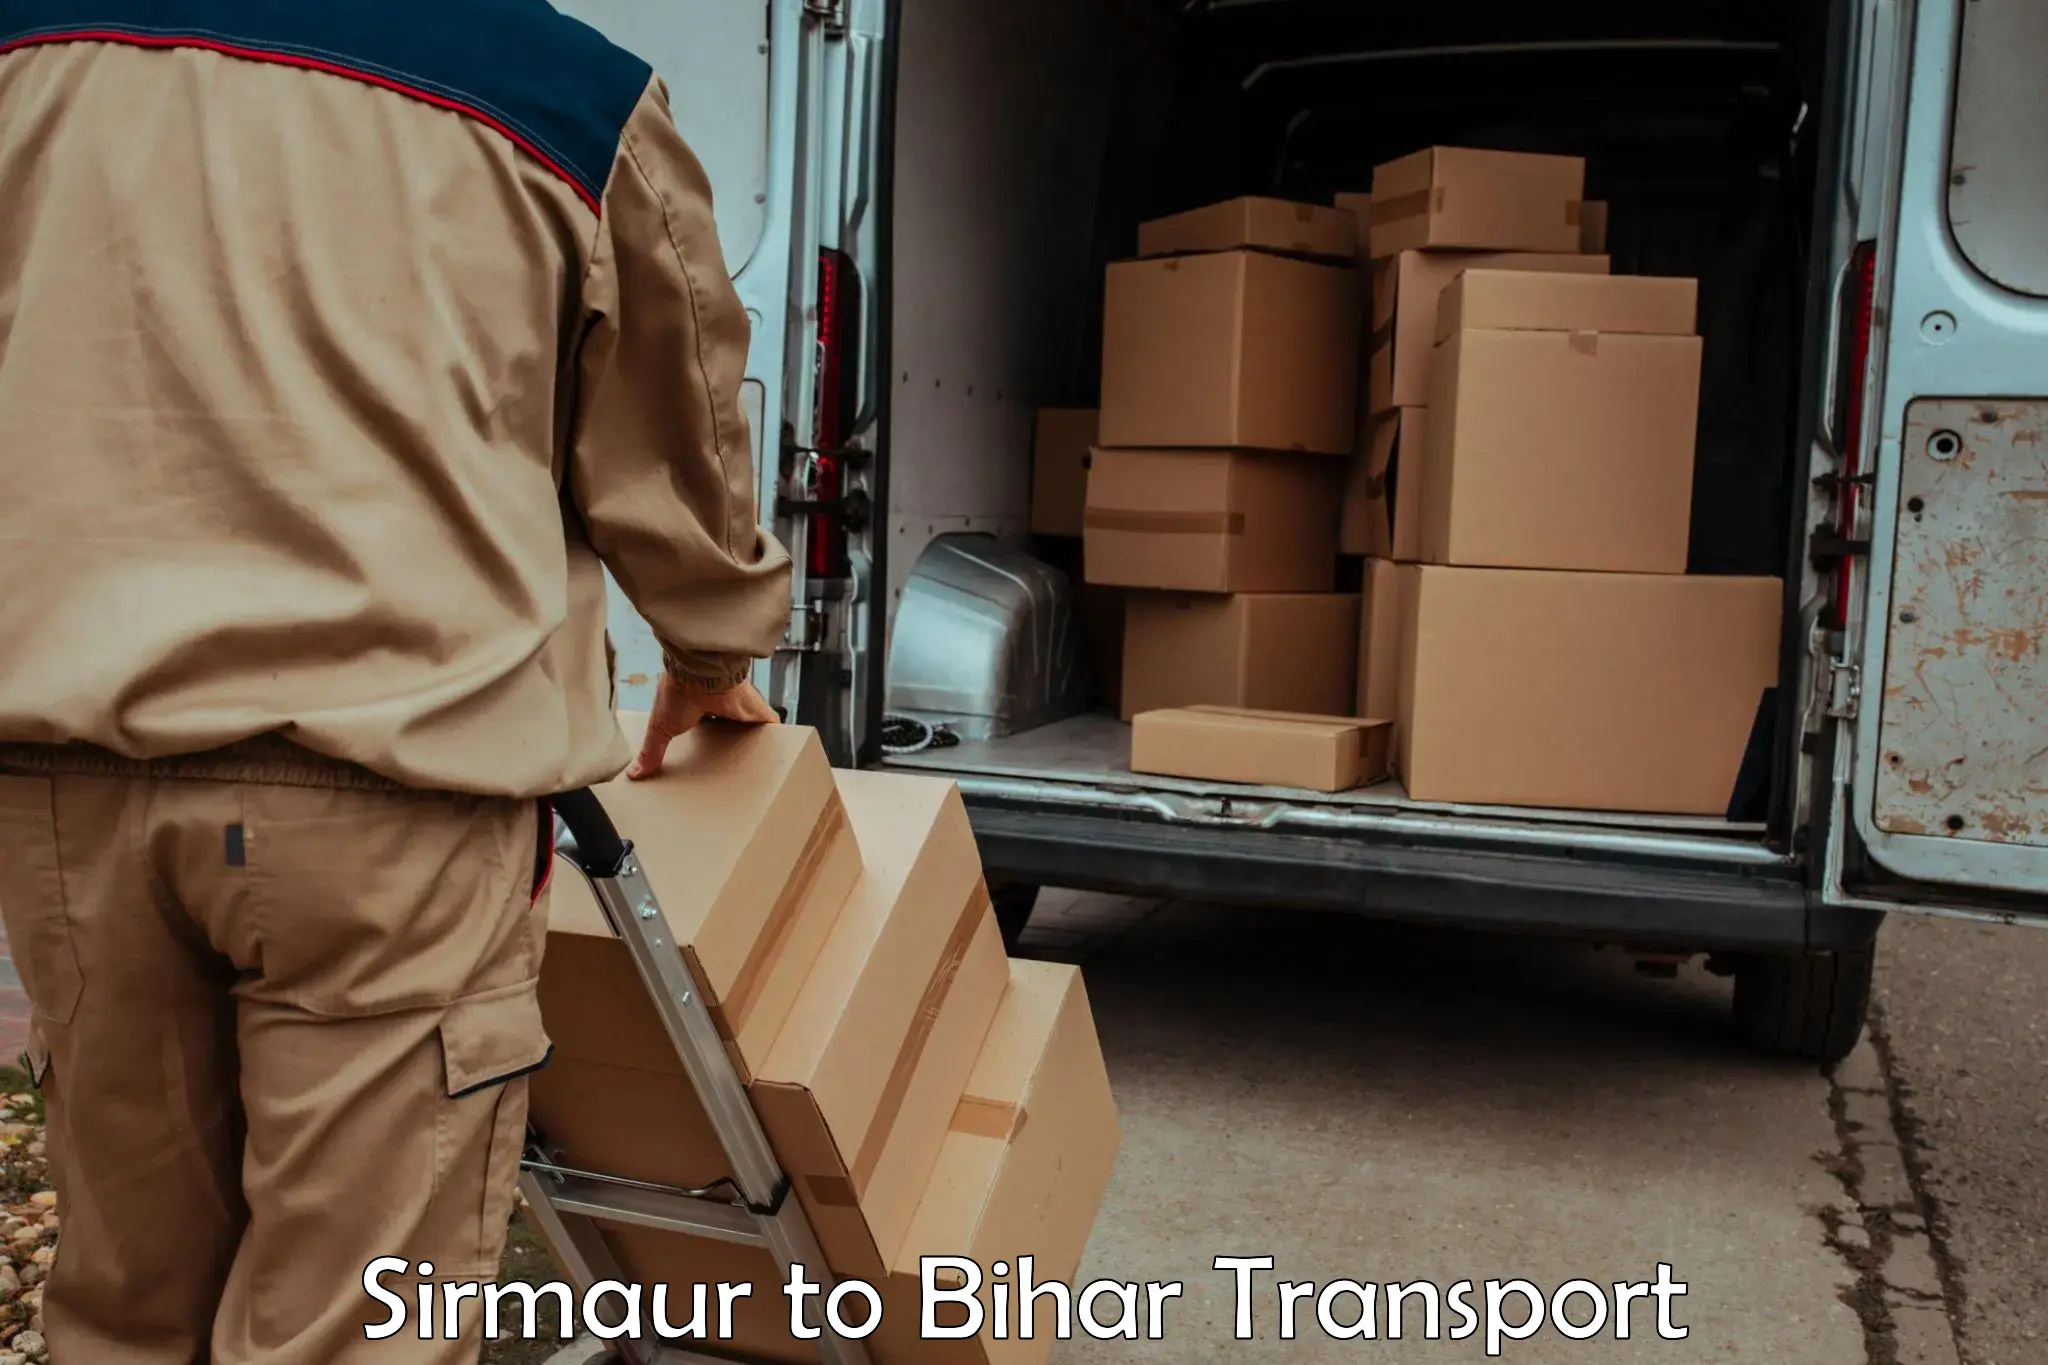 Online transport service Sirmaur to Birpur